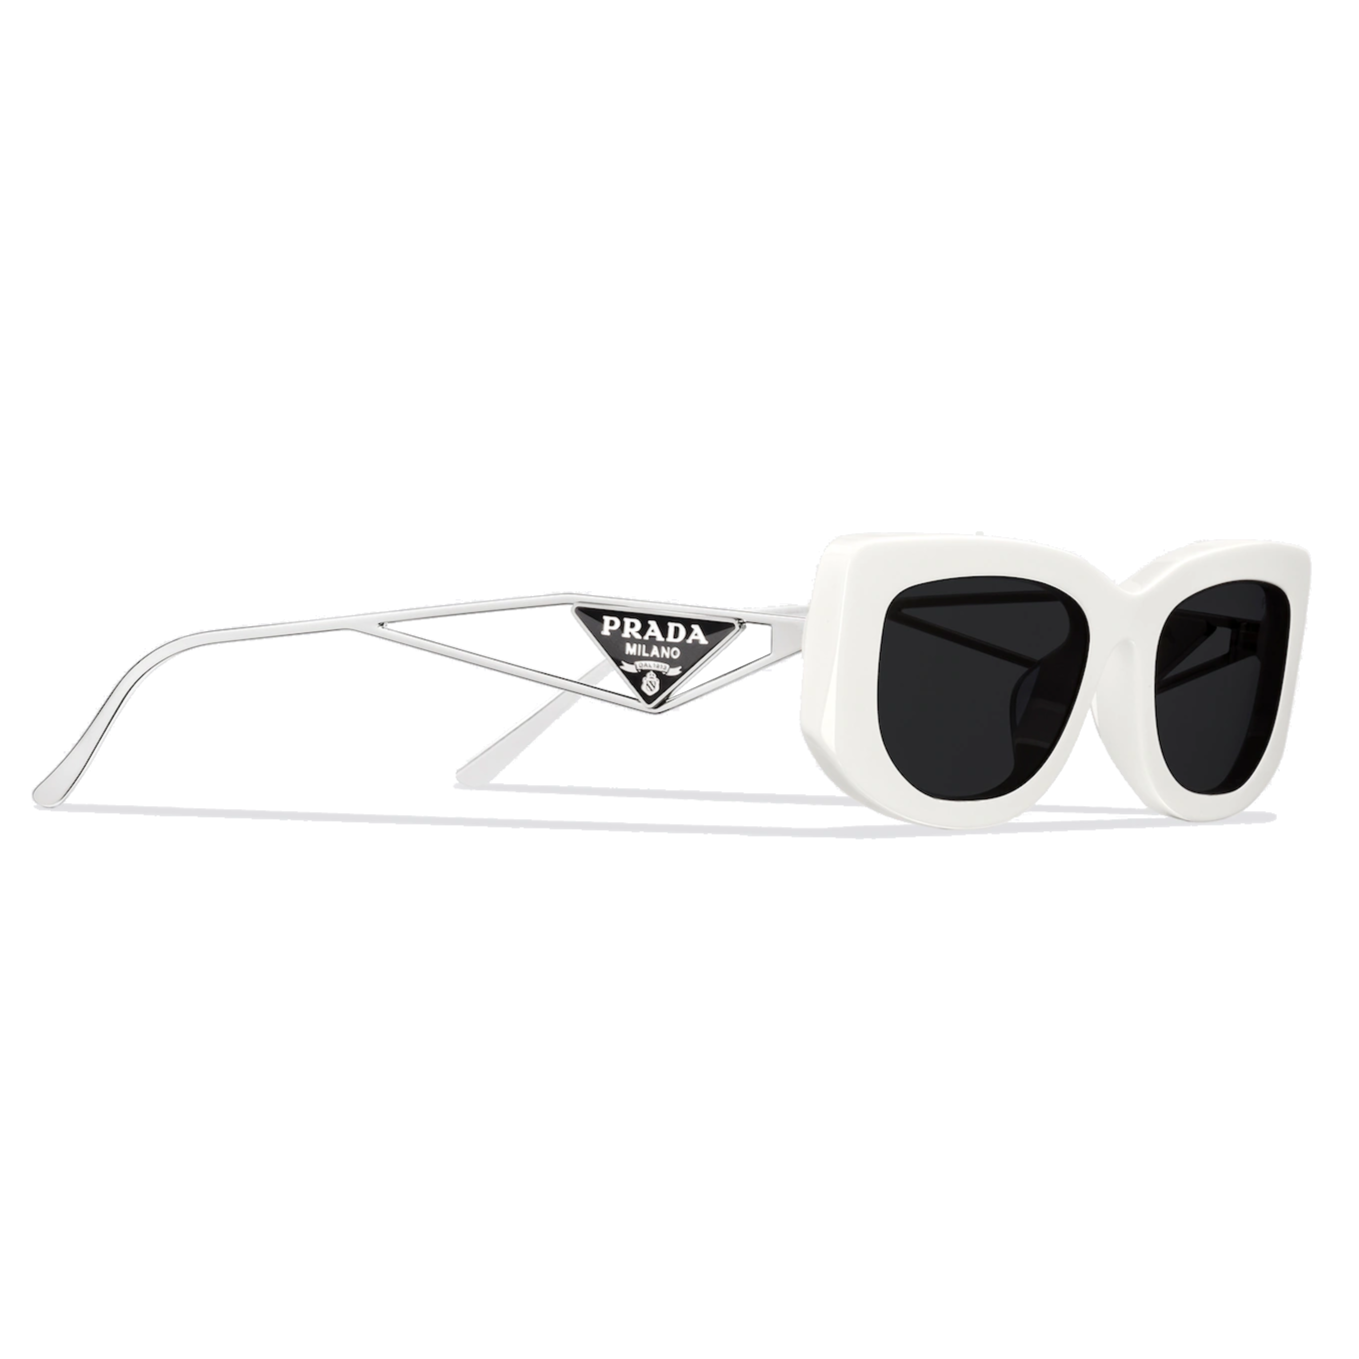 Prada Sunglasses Repair | AlphaOmega Frame Repairs